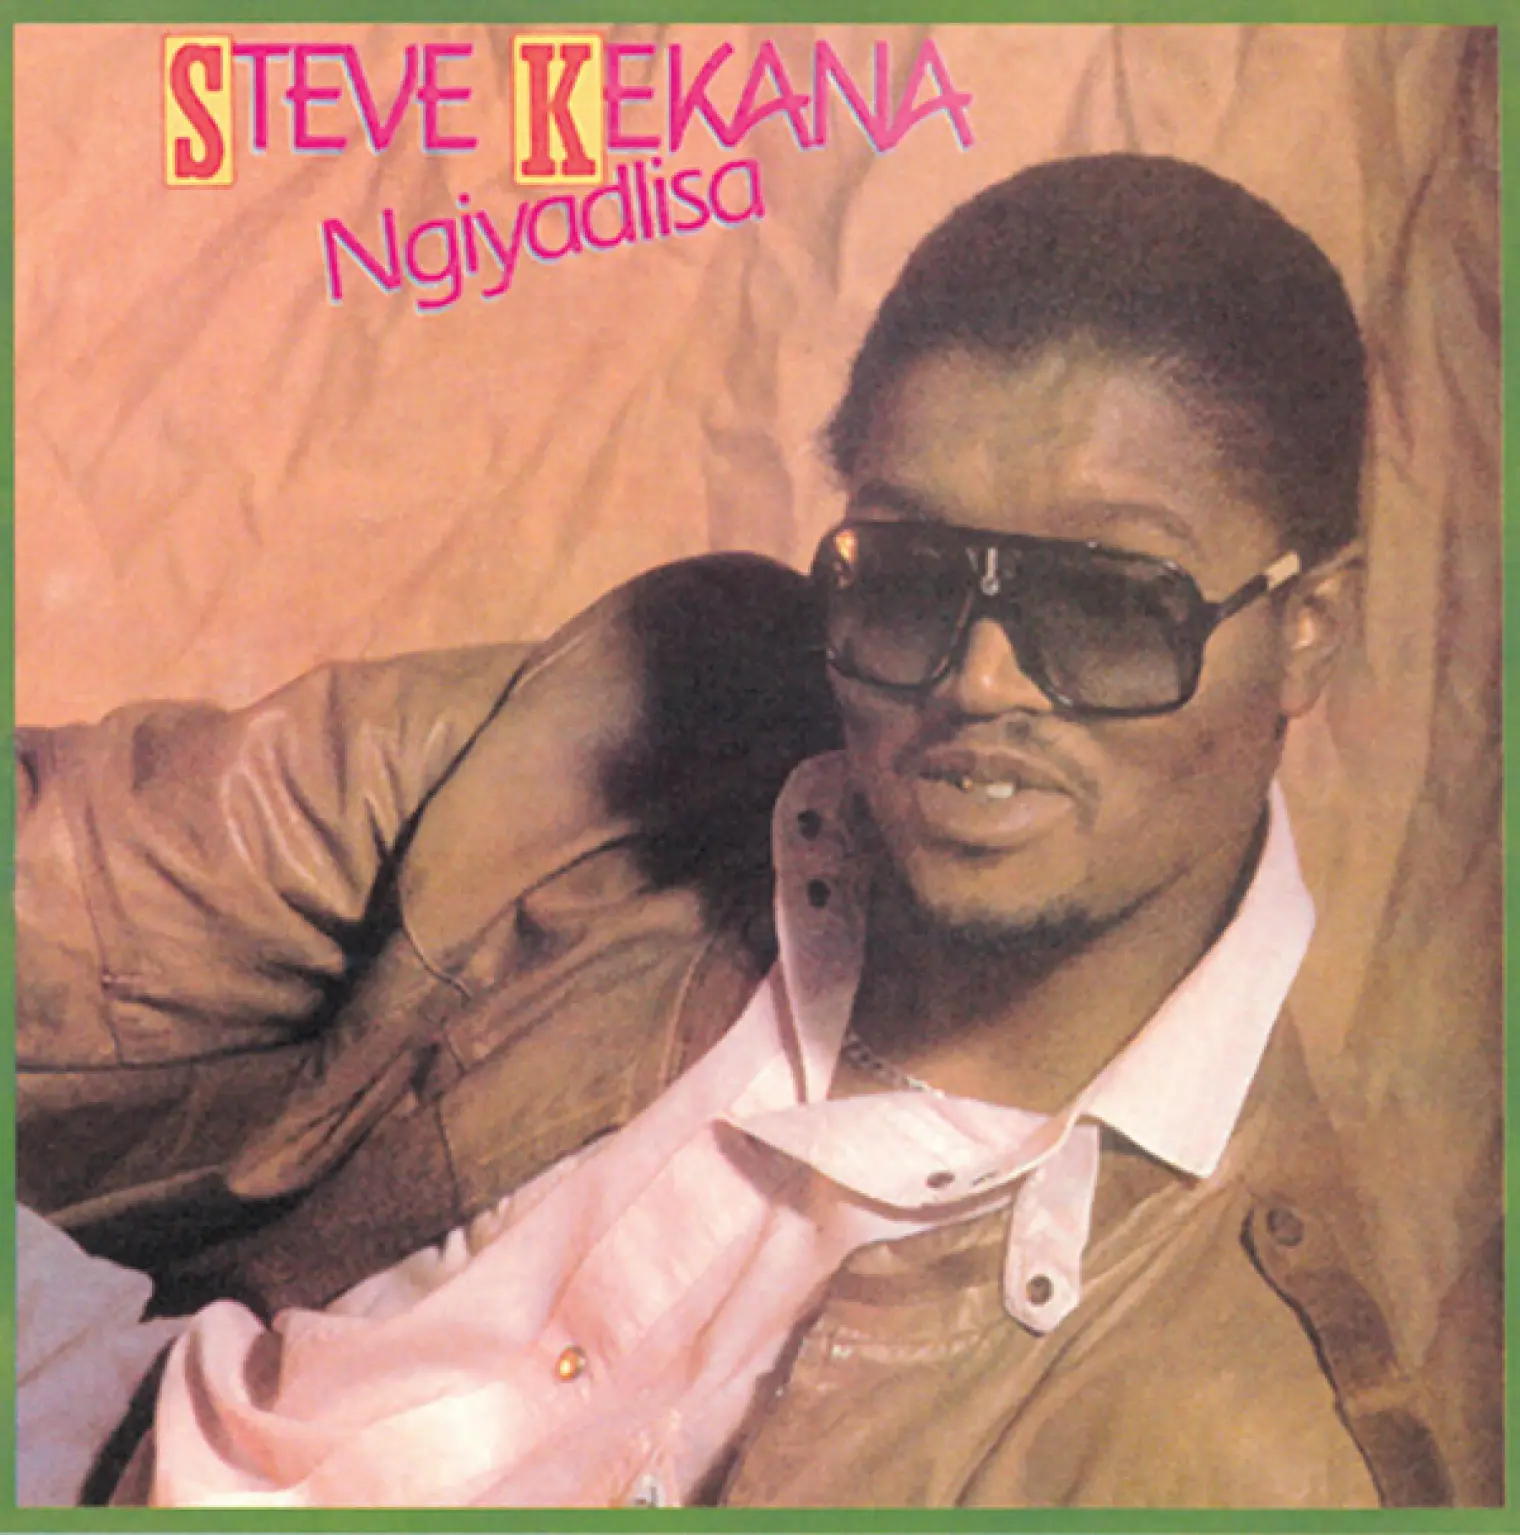 Ngiyadlisa -  Steve Kekana 